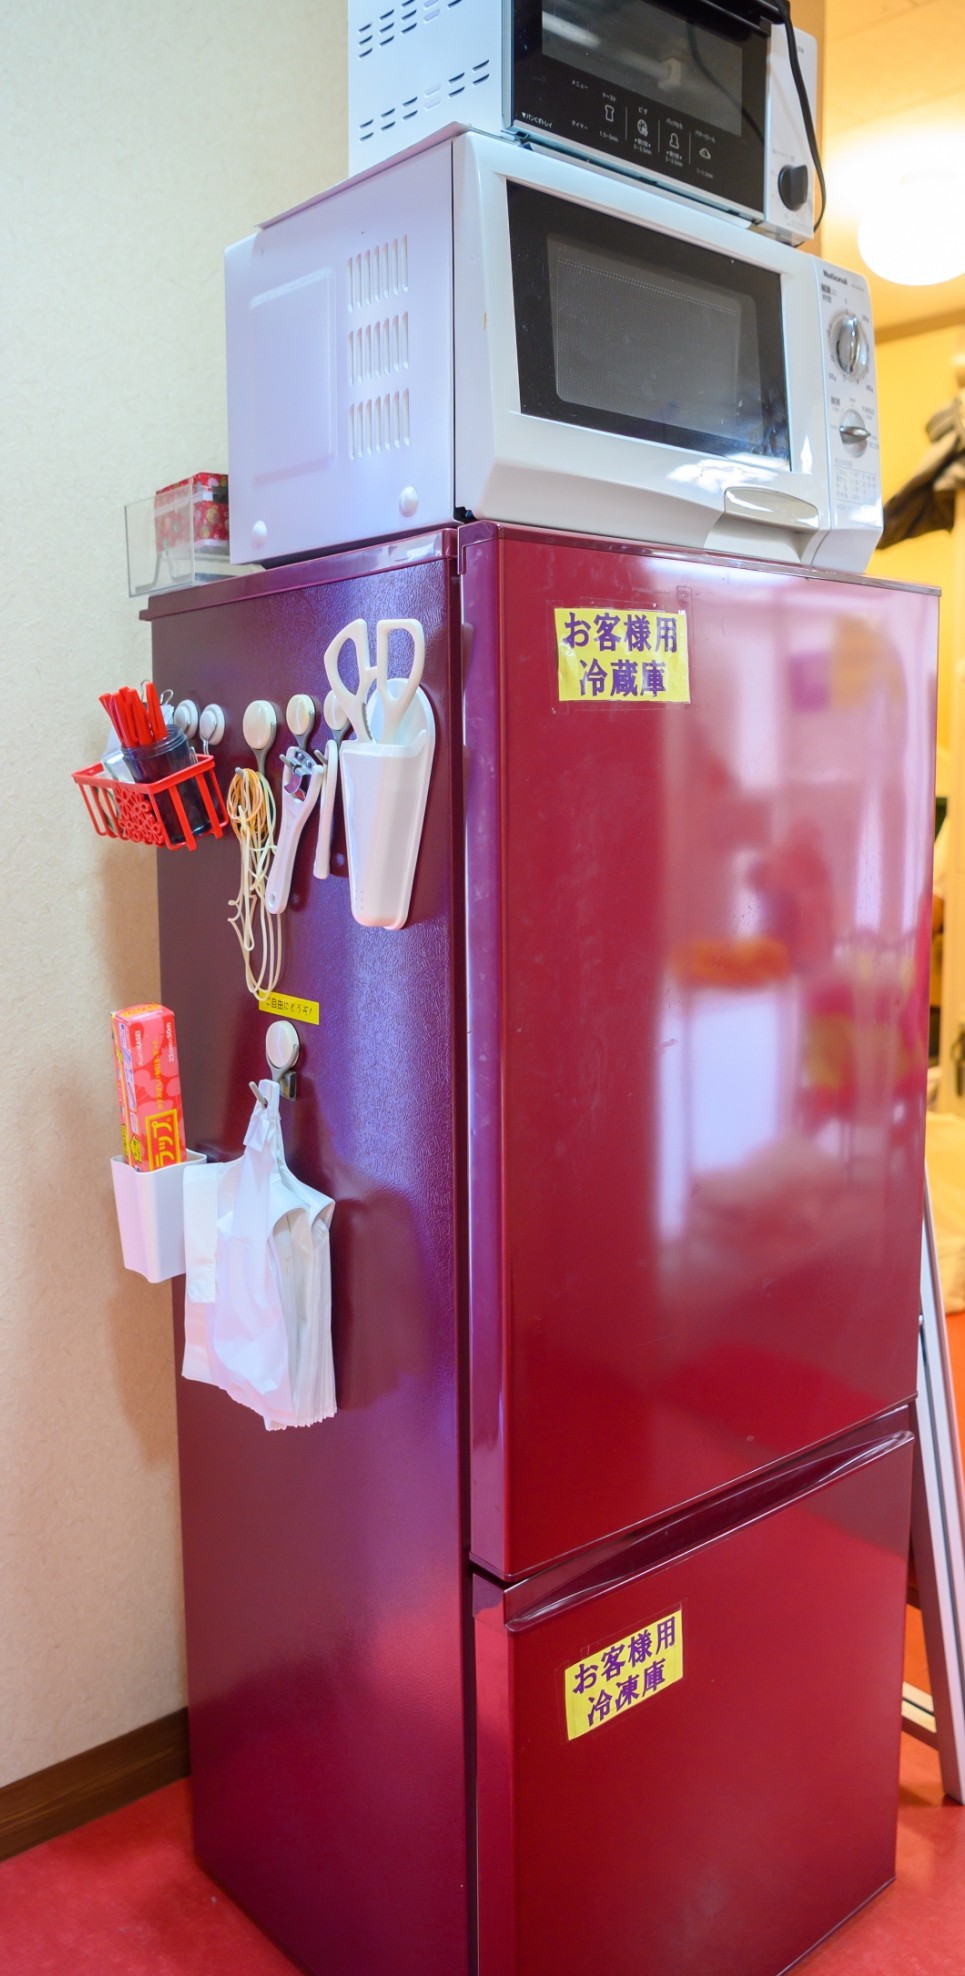 共同の冷凍冷蔵庫・電子レンジ・トースター　　貸出:ハサミ、栓抜き、ラップ等